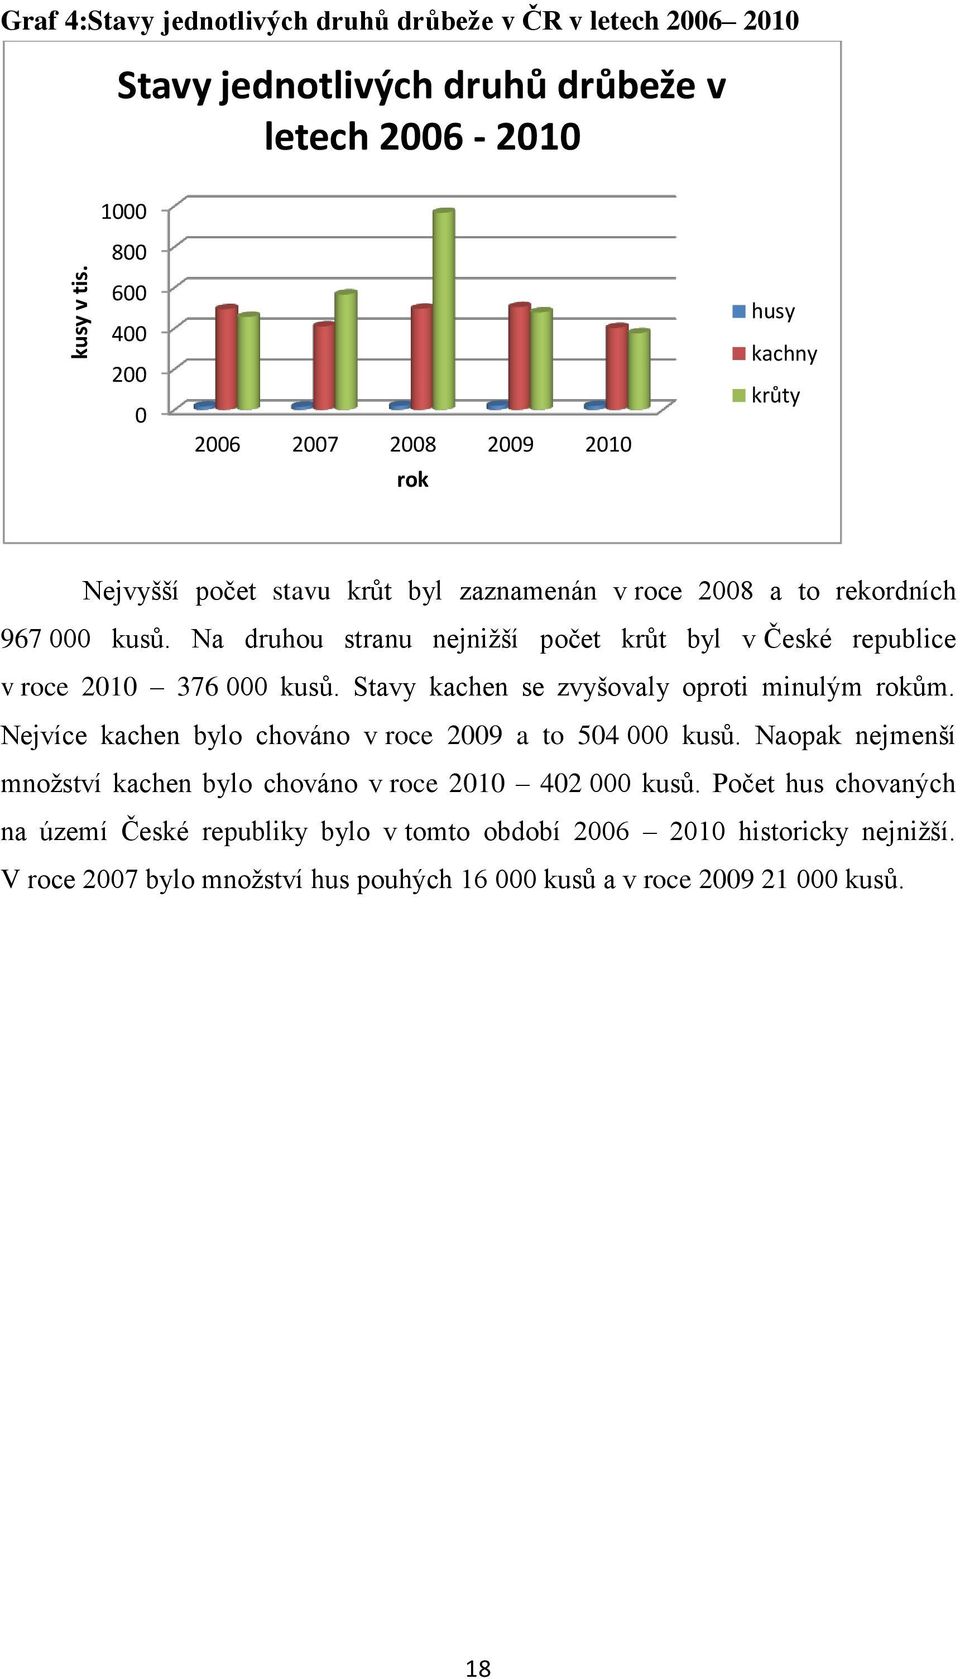 krůty Nejvyšší počet stavu krůt byl zaznamenán v roce 2008 a to rekordních 967 000 kusů. Na druhou stranu nejnižší počet krůt byl v České republice v roce 2010 376 000 kusů.